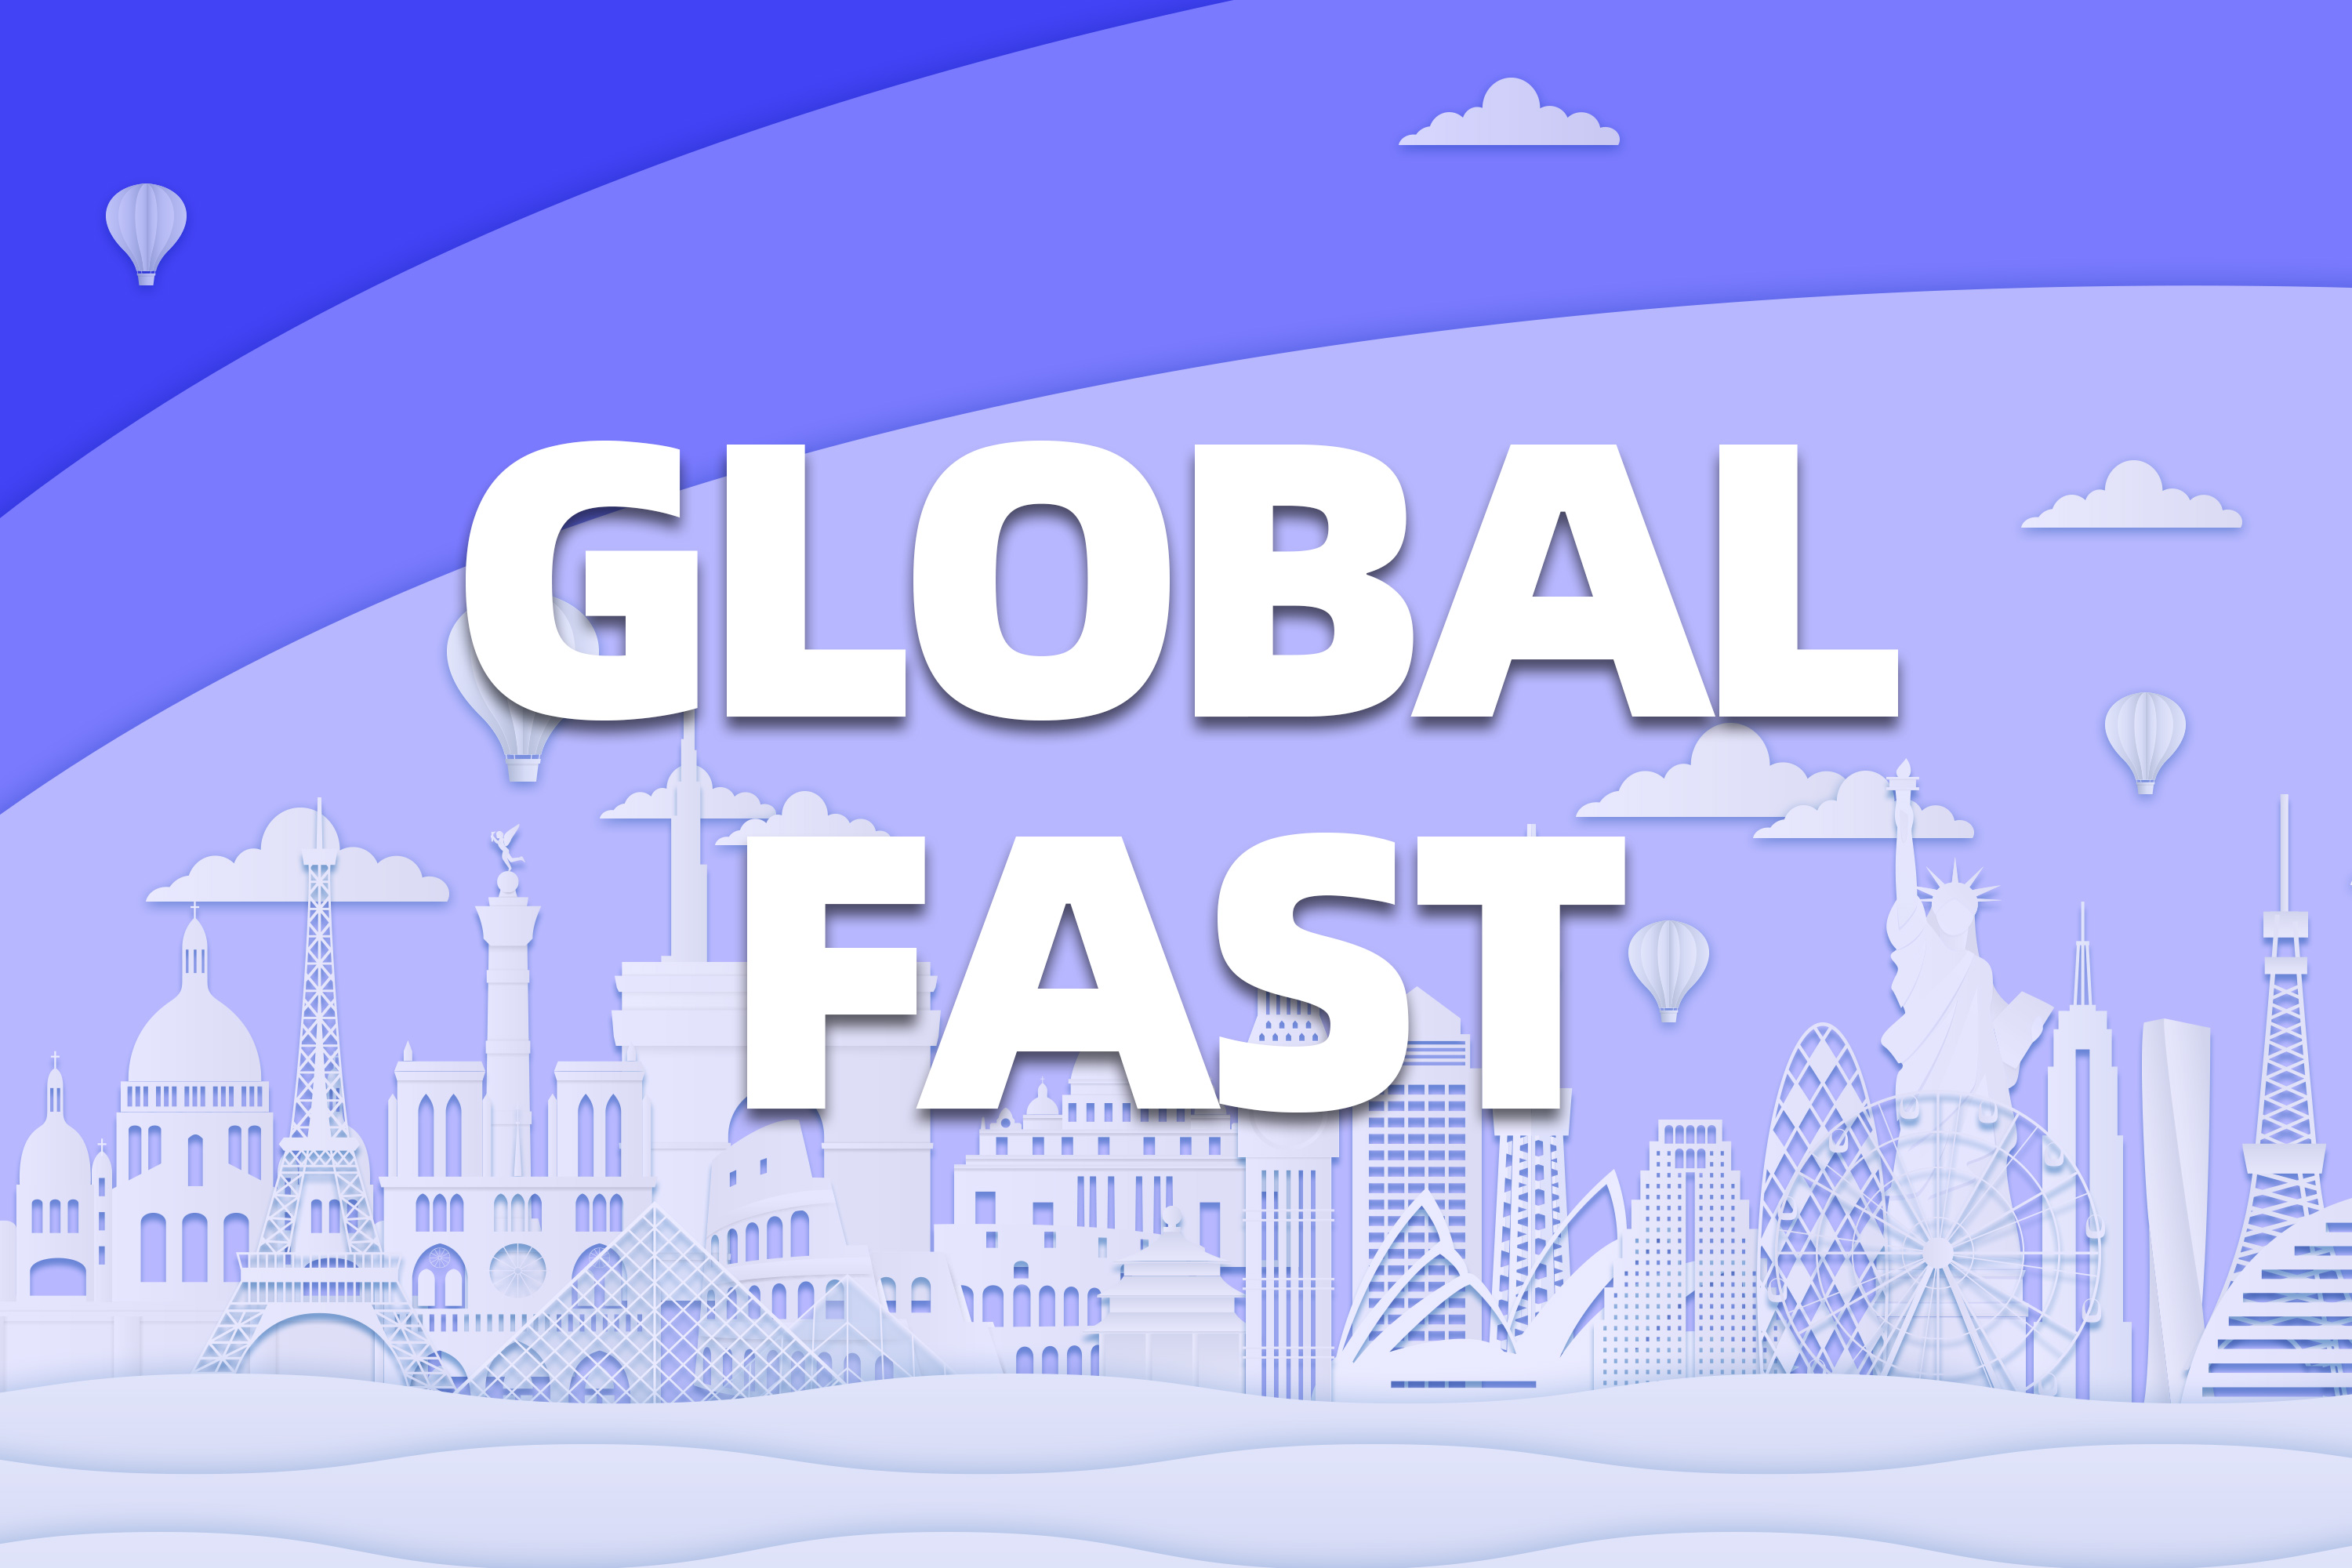 Global Fast 